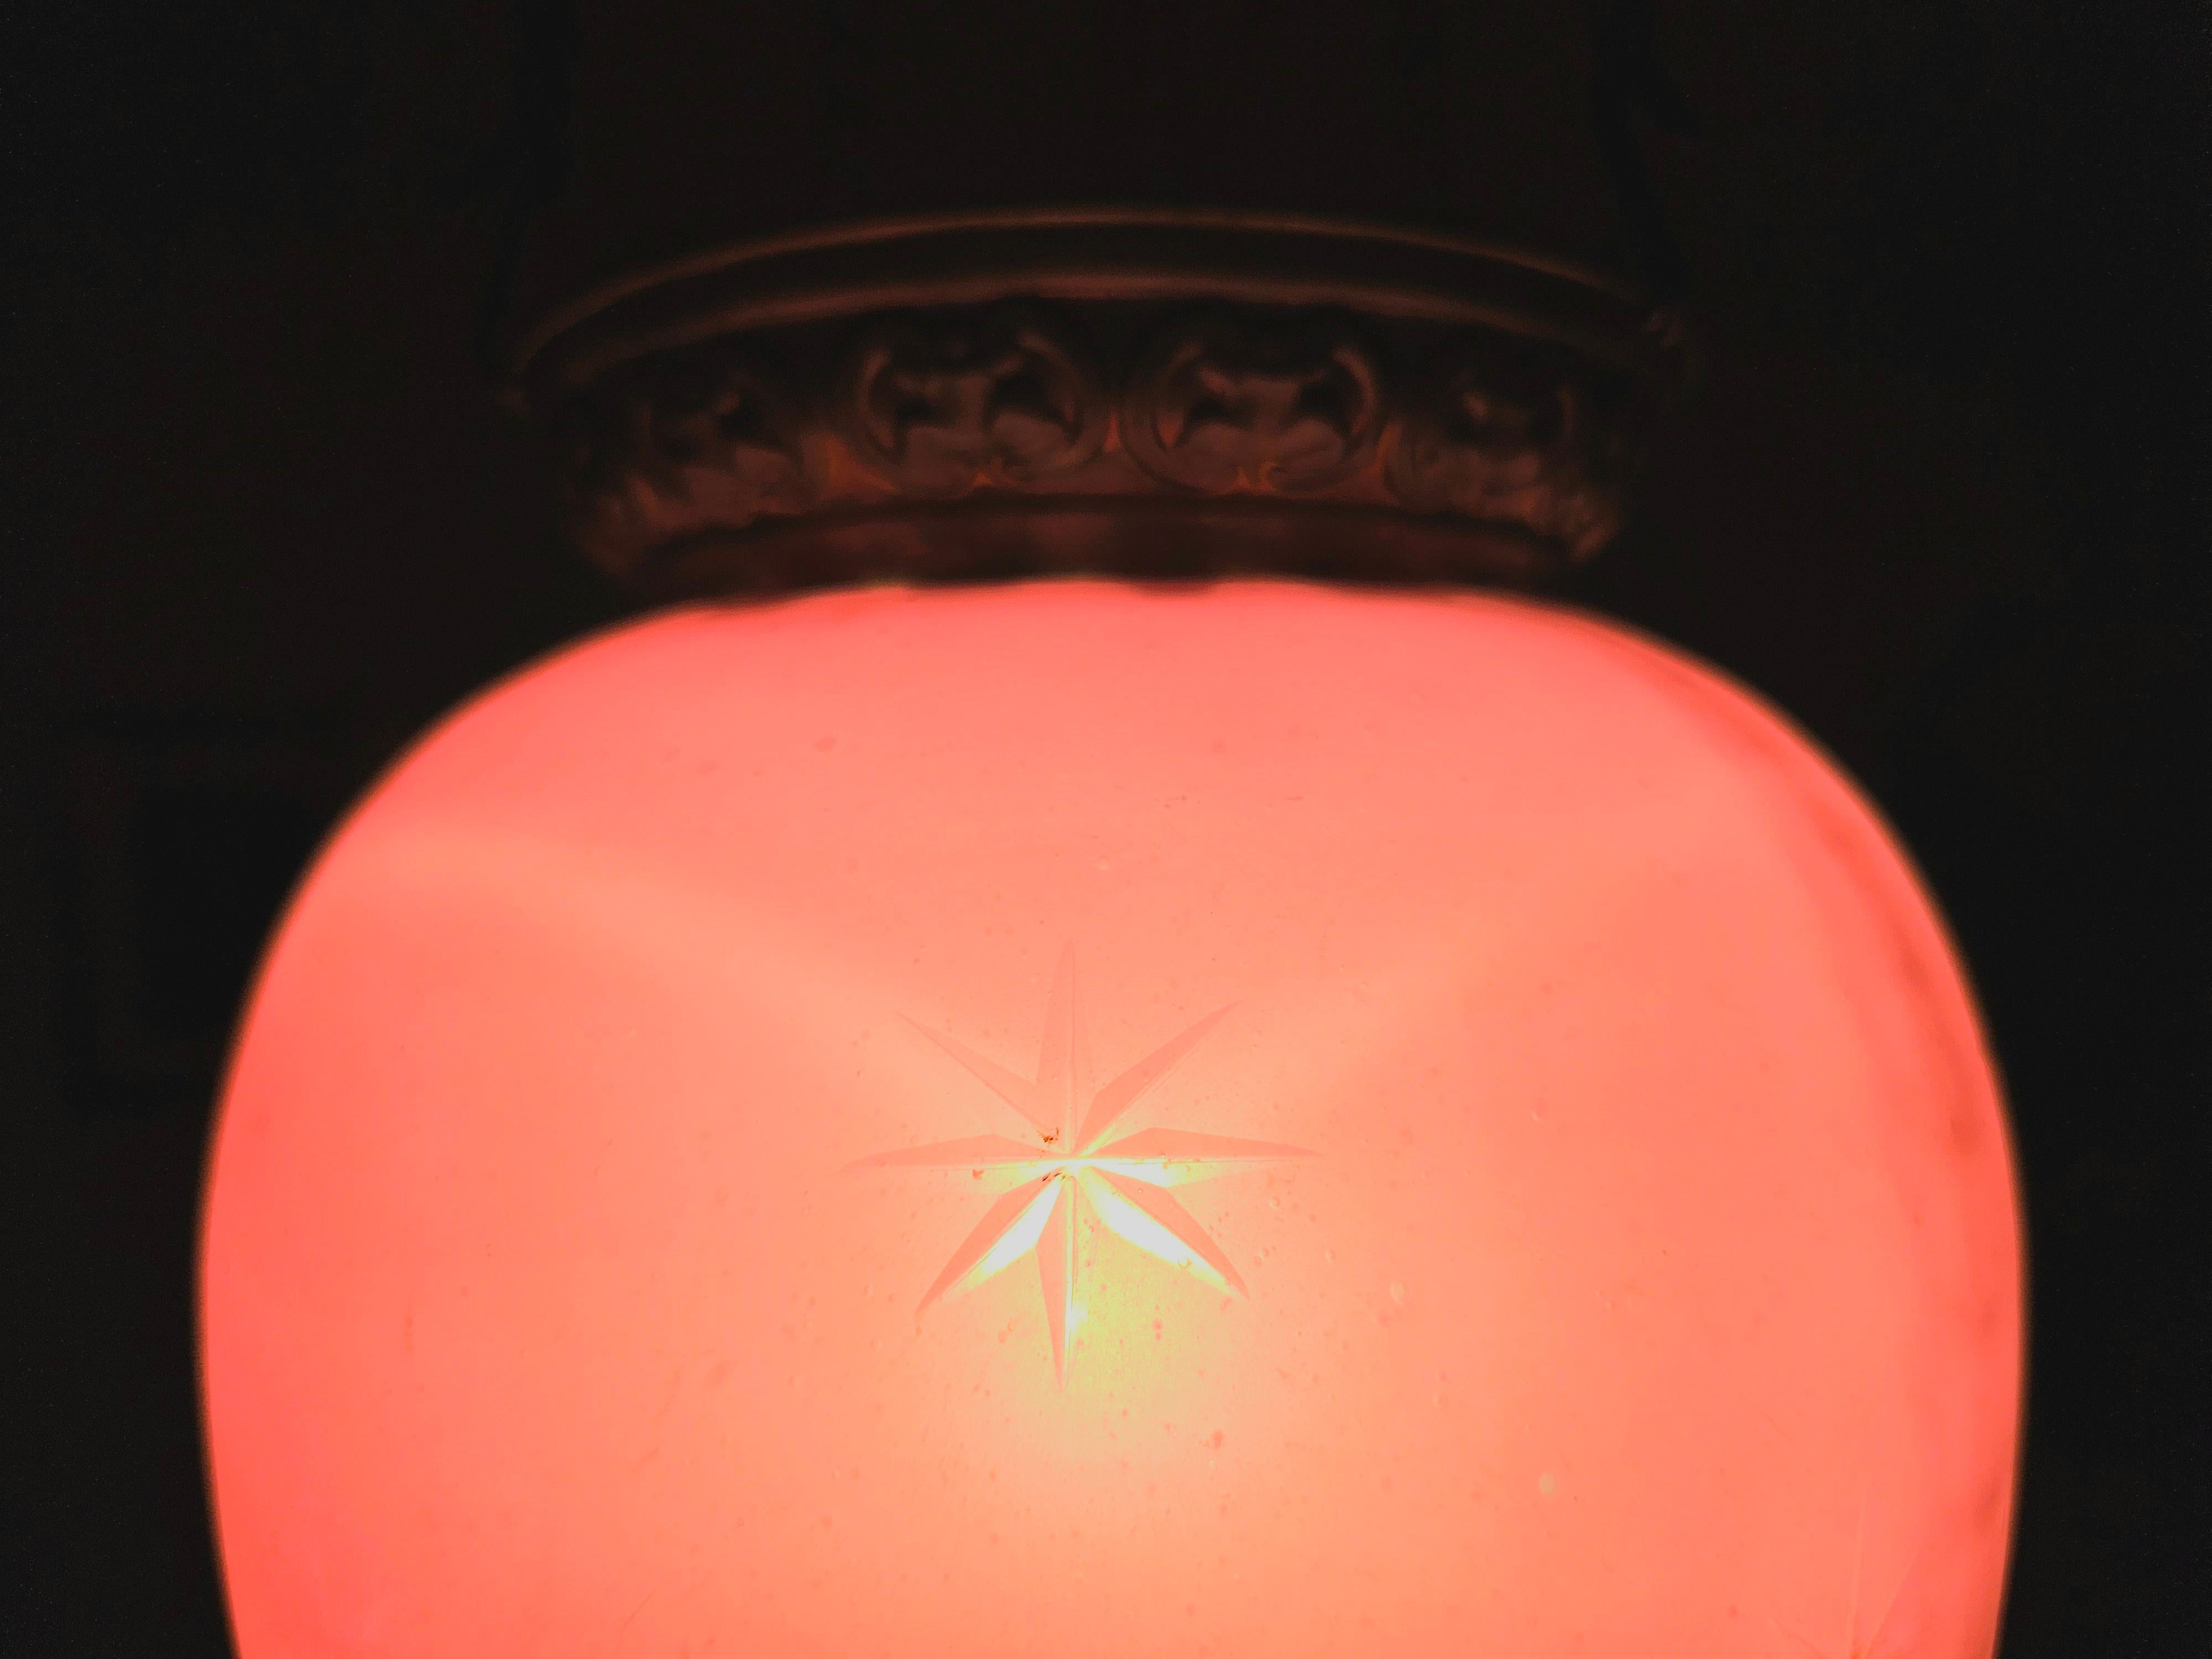 Dans cette annonce, vous trouverez une lanterne en verre rose antique extrêmement décorative, avec des éléments décoratifs en laiton. Le verre lui-même est orné d'étoiles taillées. Il évoque l'esprit romantique du Biedermeier viennois et s'intègre